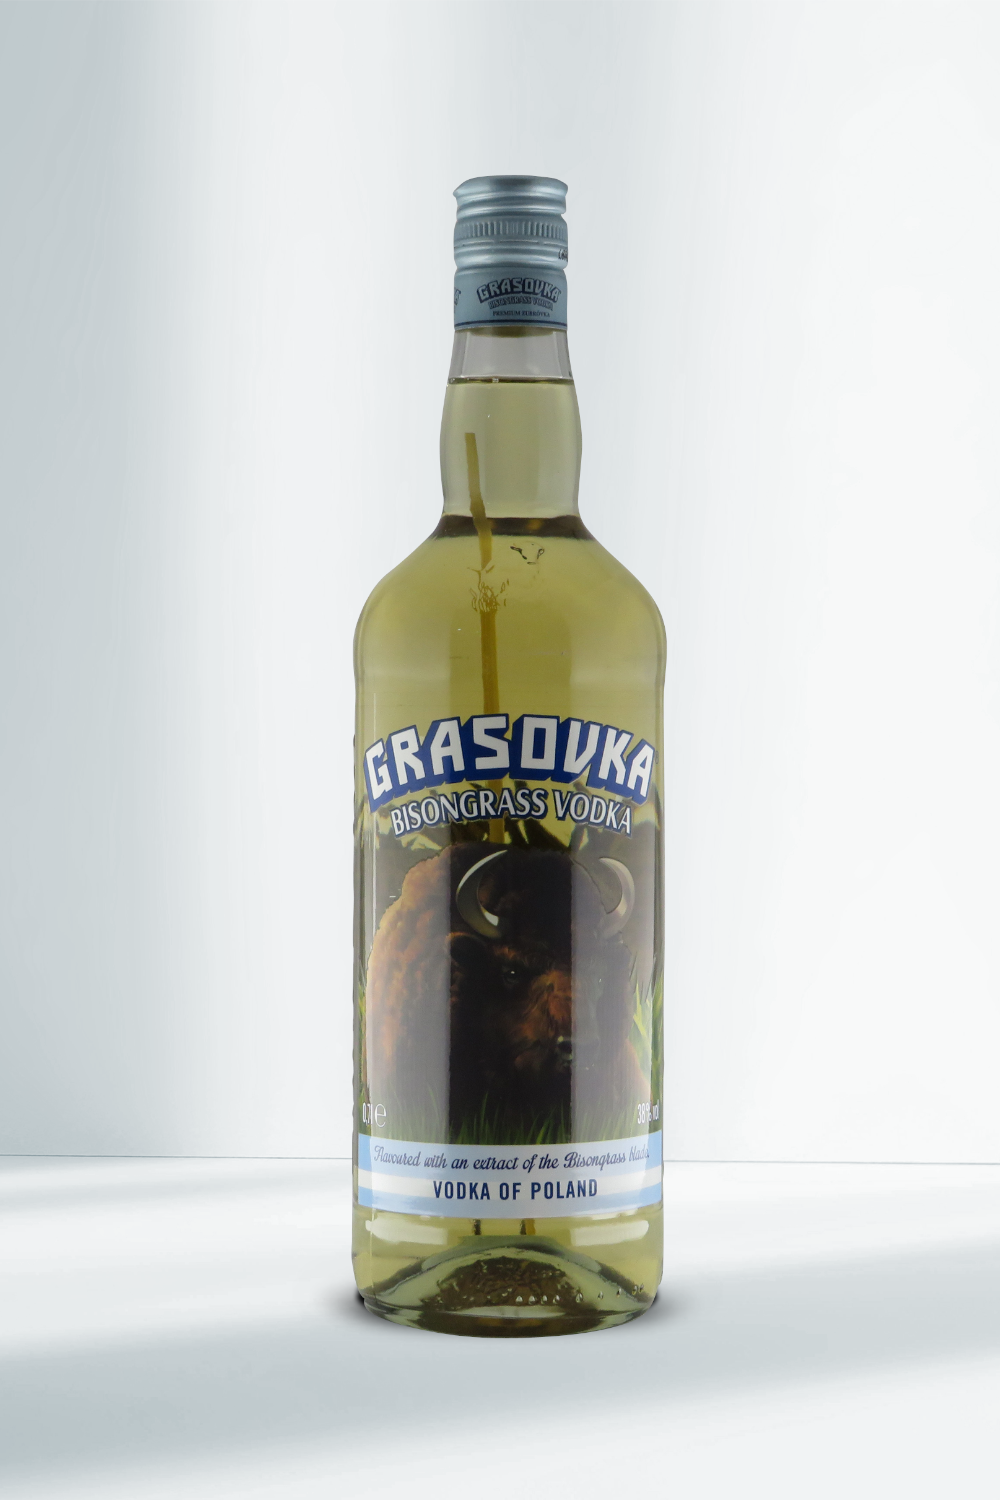 Grasovka Bisongrass Vodka 38% 0,7l I Beverage-Shop